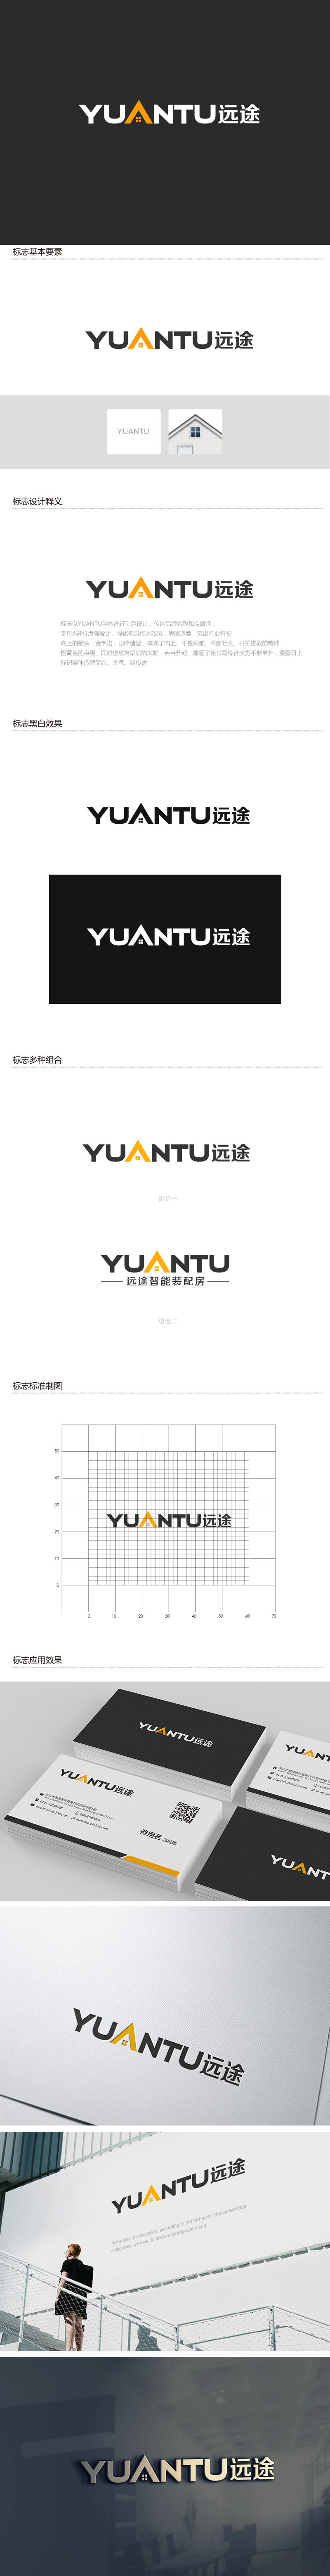 吴晓伟的江苏远途智能装配房有限公司logo设计